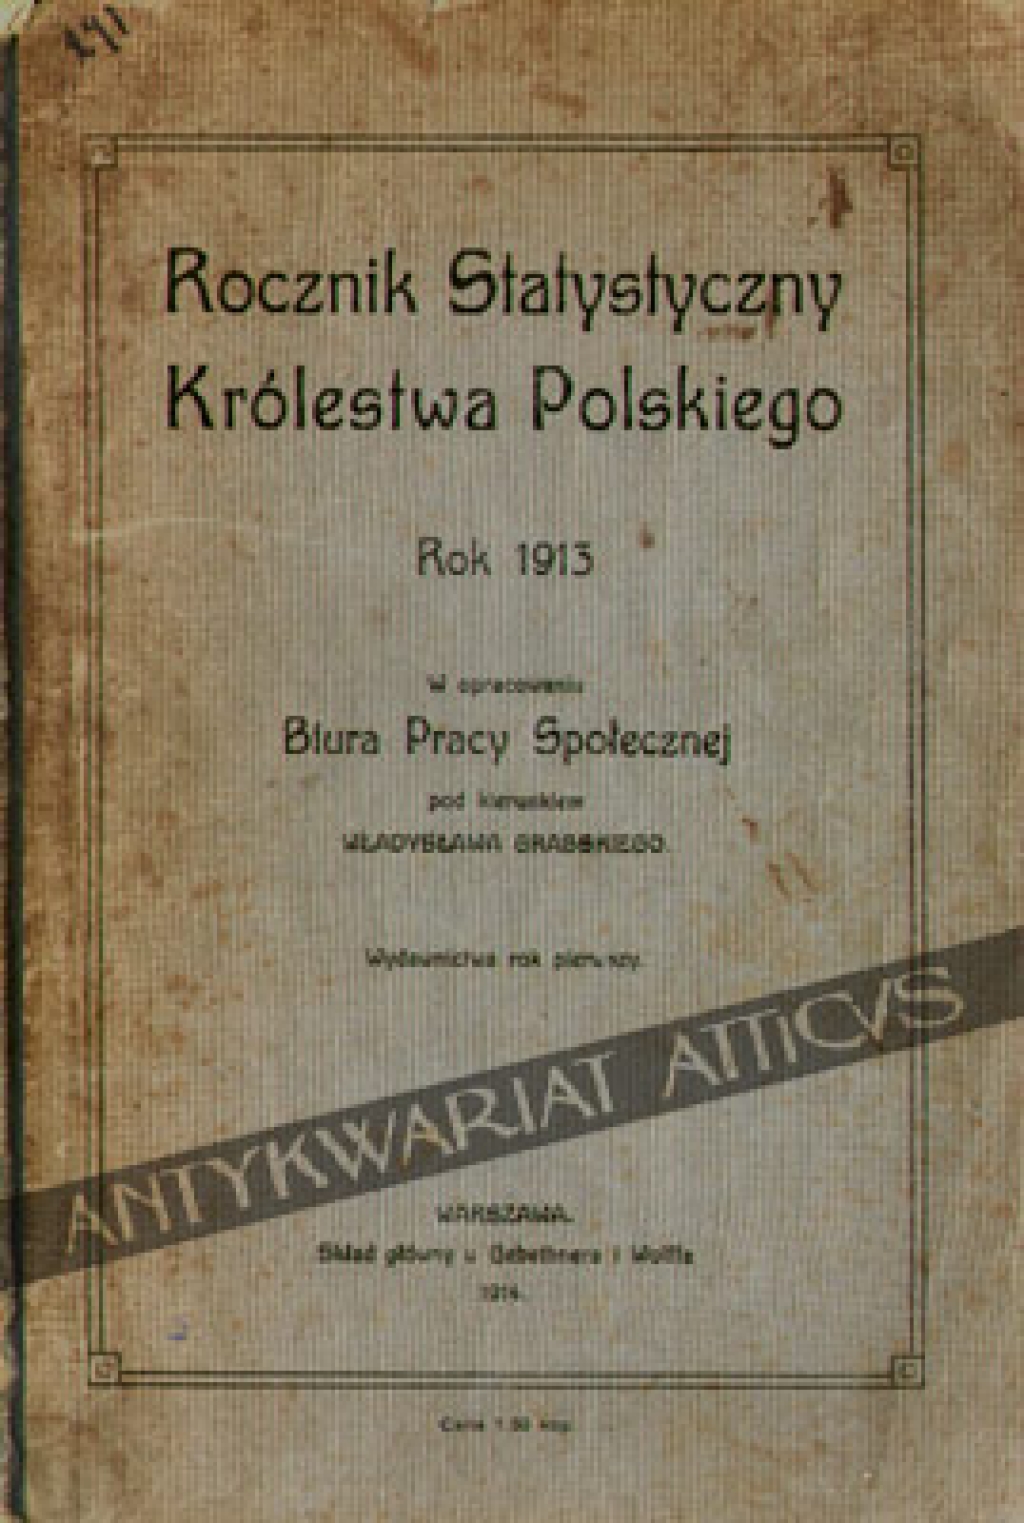 Rocznik Statystyczny Królestwa Polskiego. Rok 1913 